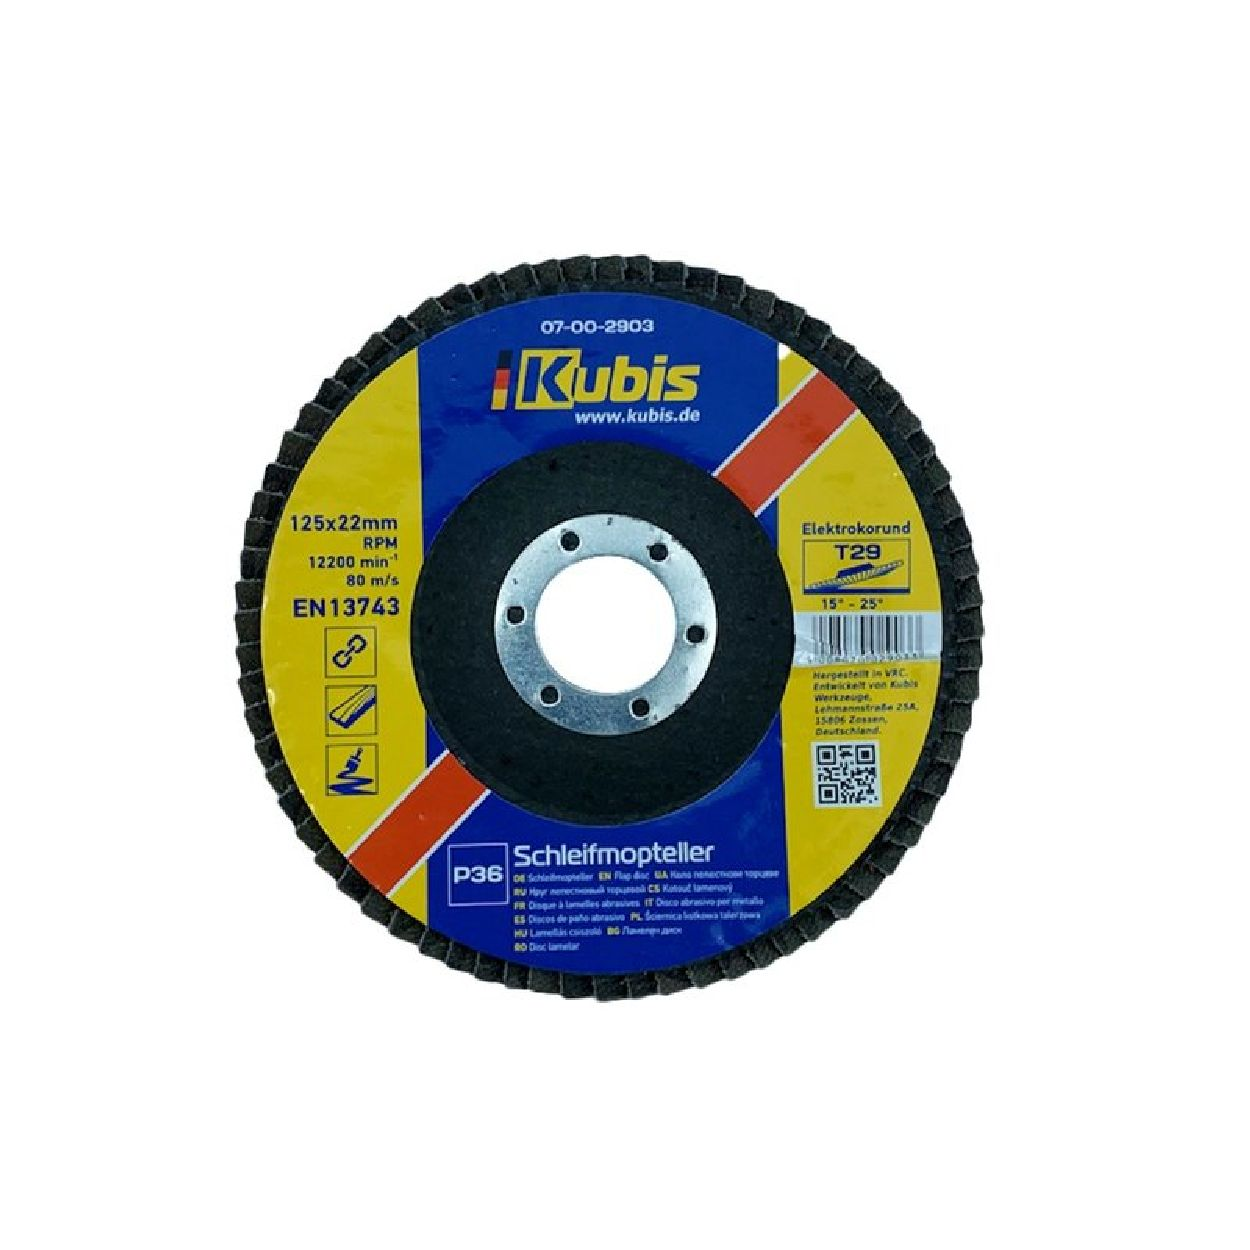 INBUSCO / KUBIS Transparent KB07-00-2903-1-2 Schleifmopteller Multifunktionswerkzeug